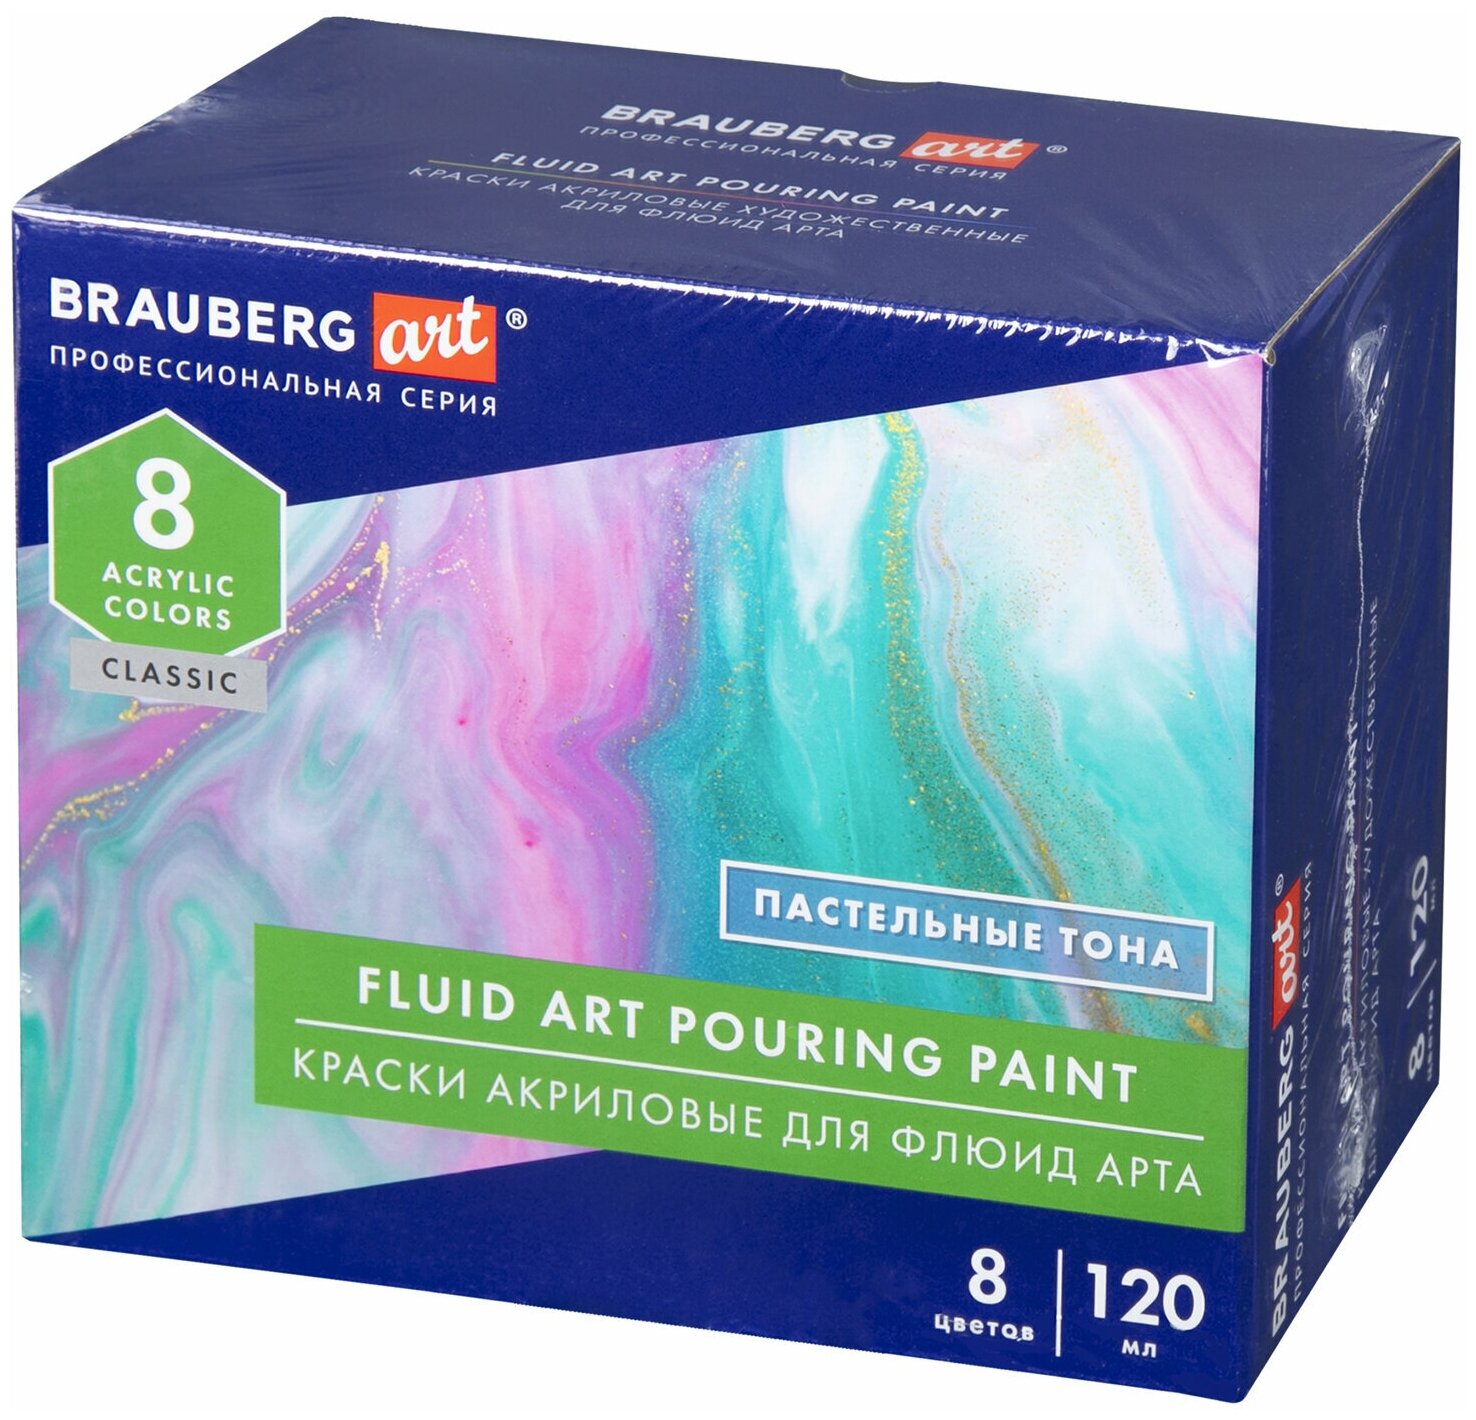 Краски акриловые художественные для рисования для техники Флюид Арт (POURING Paint) Пастельные тона, 8 цветов по 120 мл, Brauberg Art, 192241